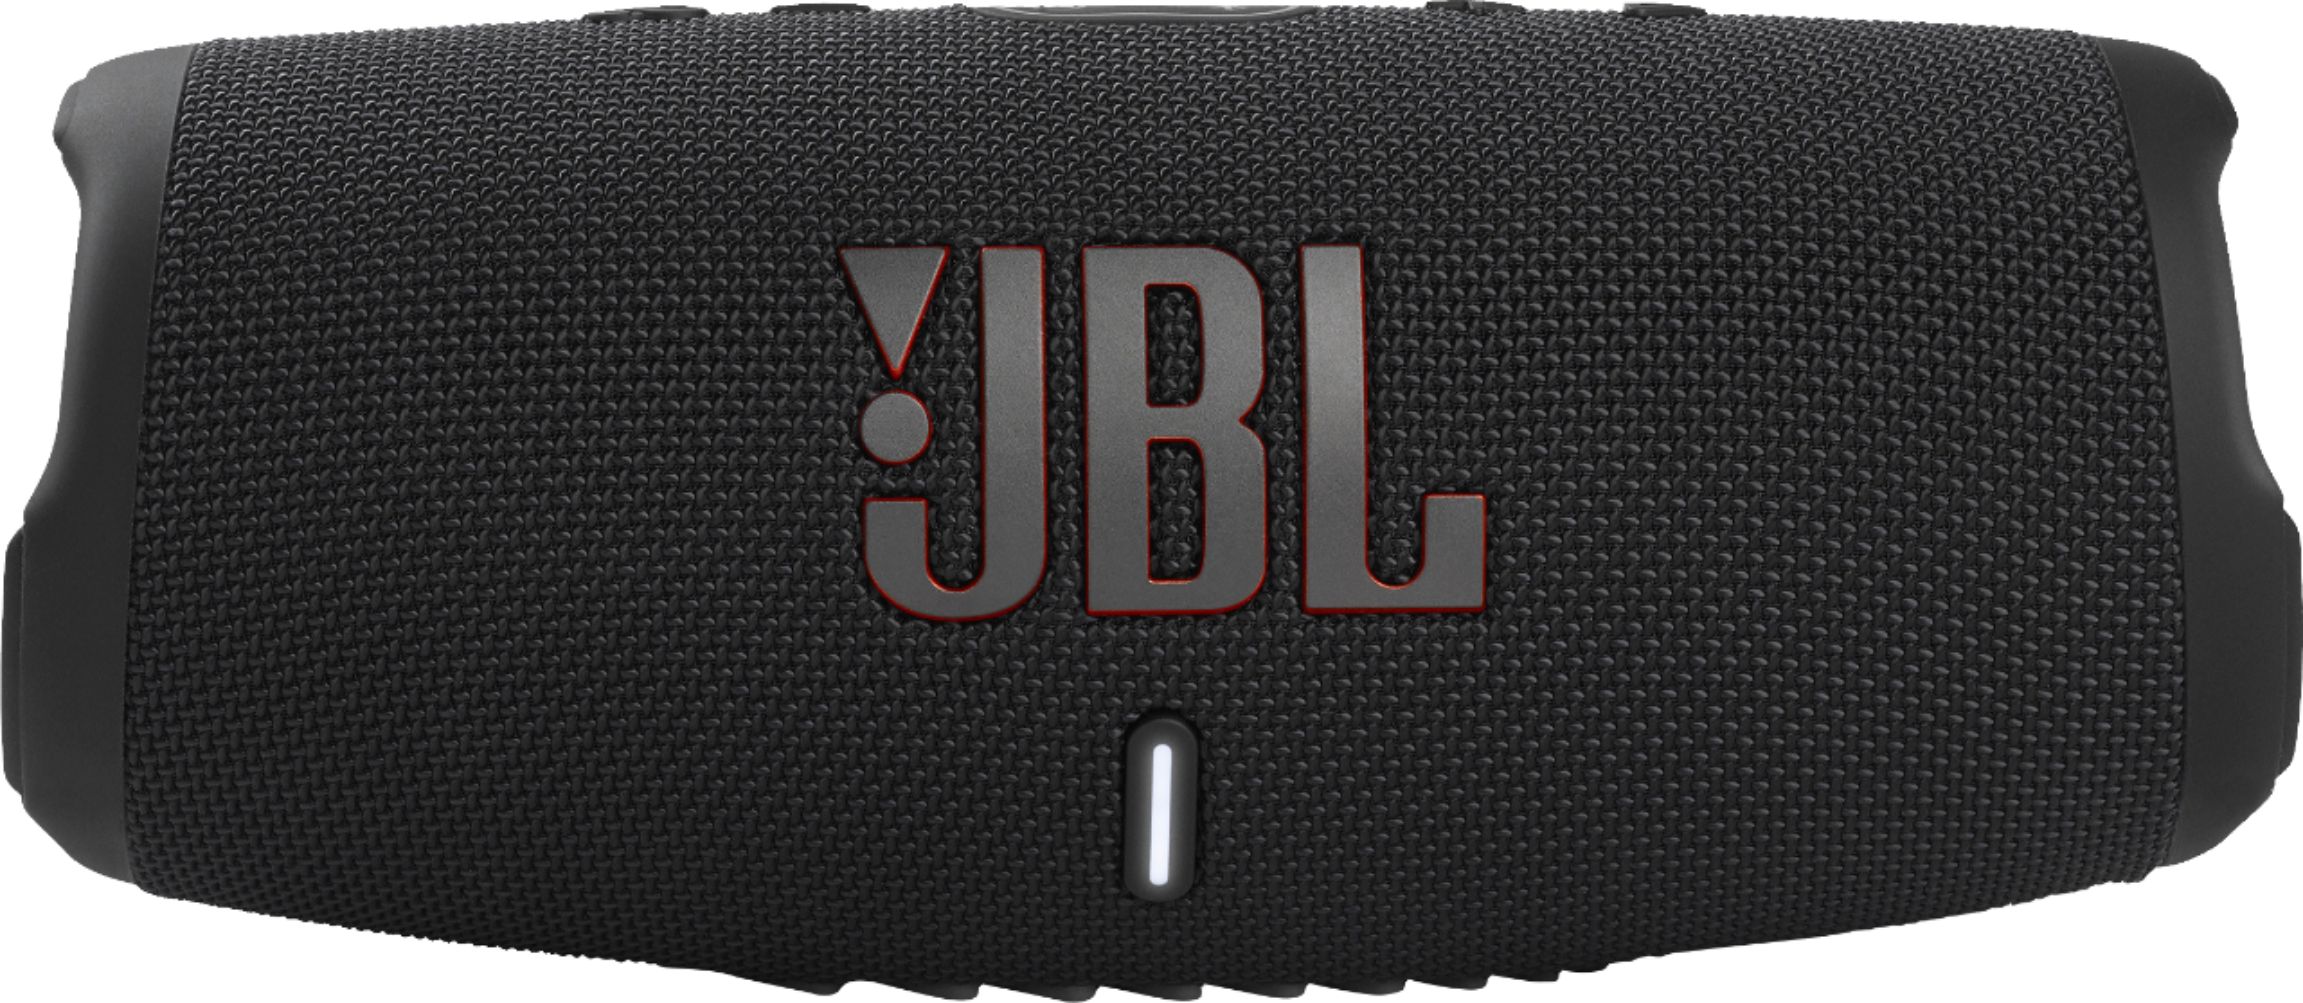 JBL CHARGE5 Portable Waterproof Speaker with Powerbank JBLCHARGE5BLKAM - Buy